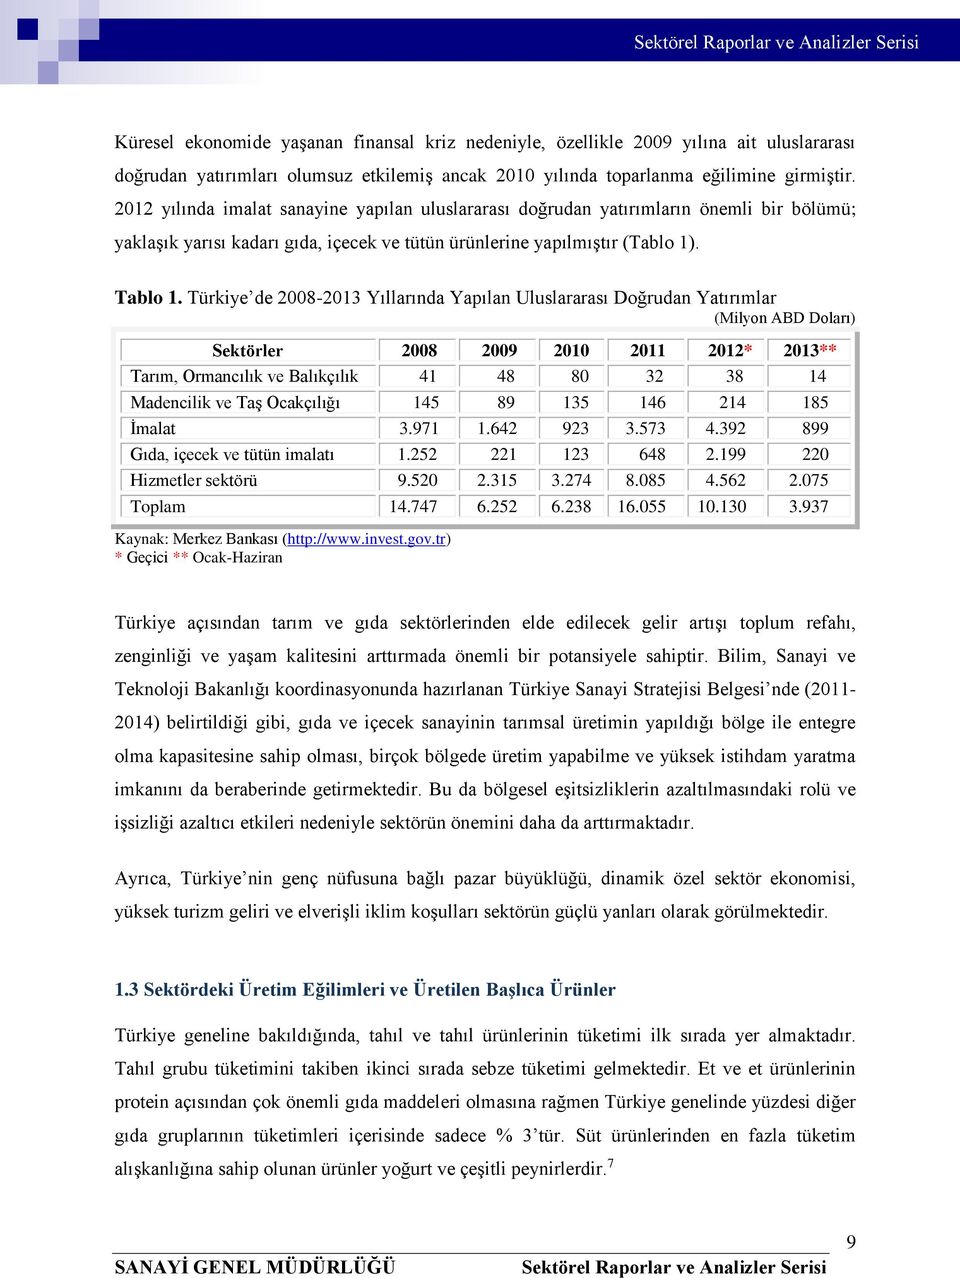 Türkiye de 2008-2013 Yıllarında Yapılan Uluslararası Doğrudan Yatırımlar (Milyon ABD Doları) Sektörler 2008 2009 2010 2011 2012* 2013** Tarım, Ormancılık ve Balıkçılık 41 48 80 32 38 14 Madencilik ve